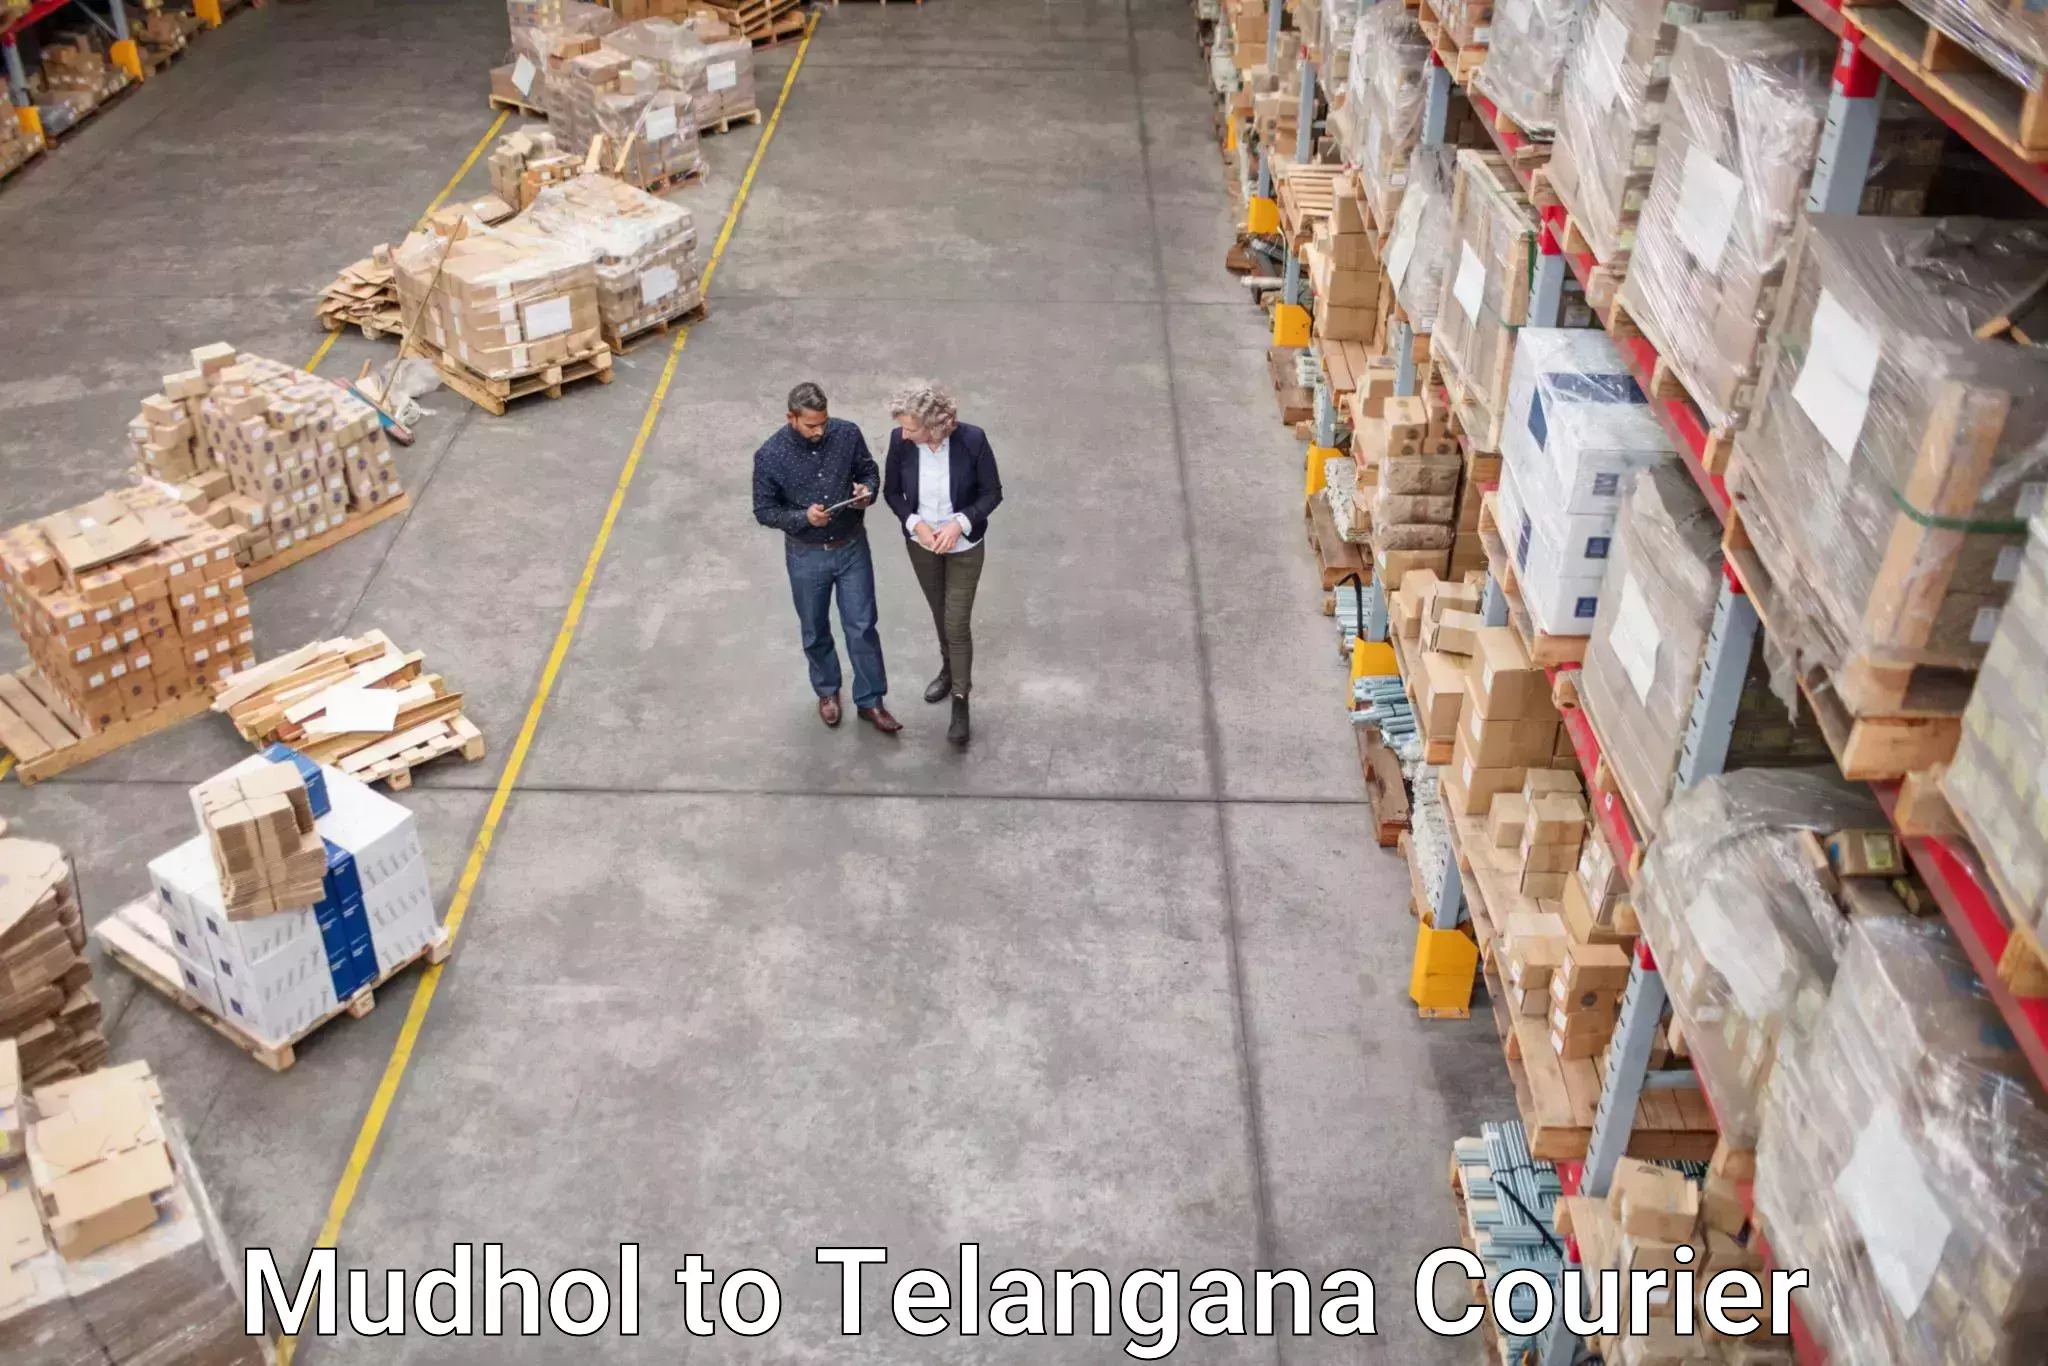 Courier service innovation Mudhol to Jogulamba Gadwal